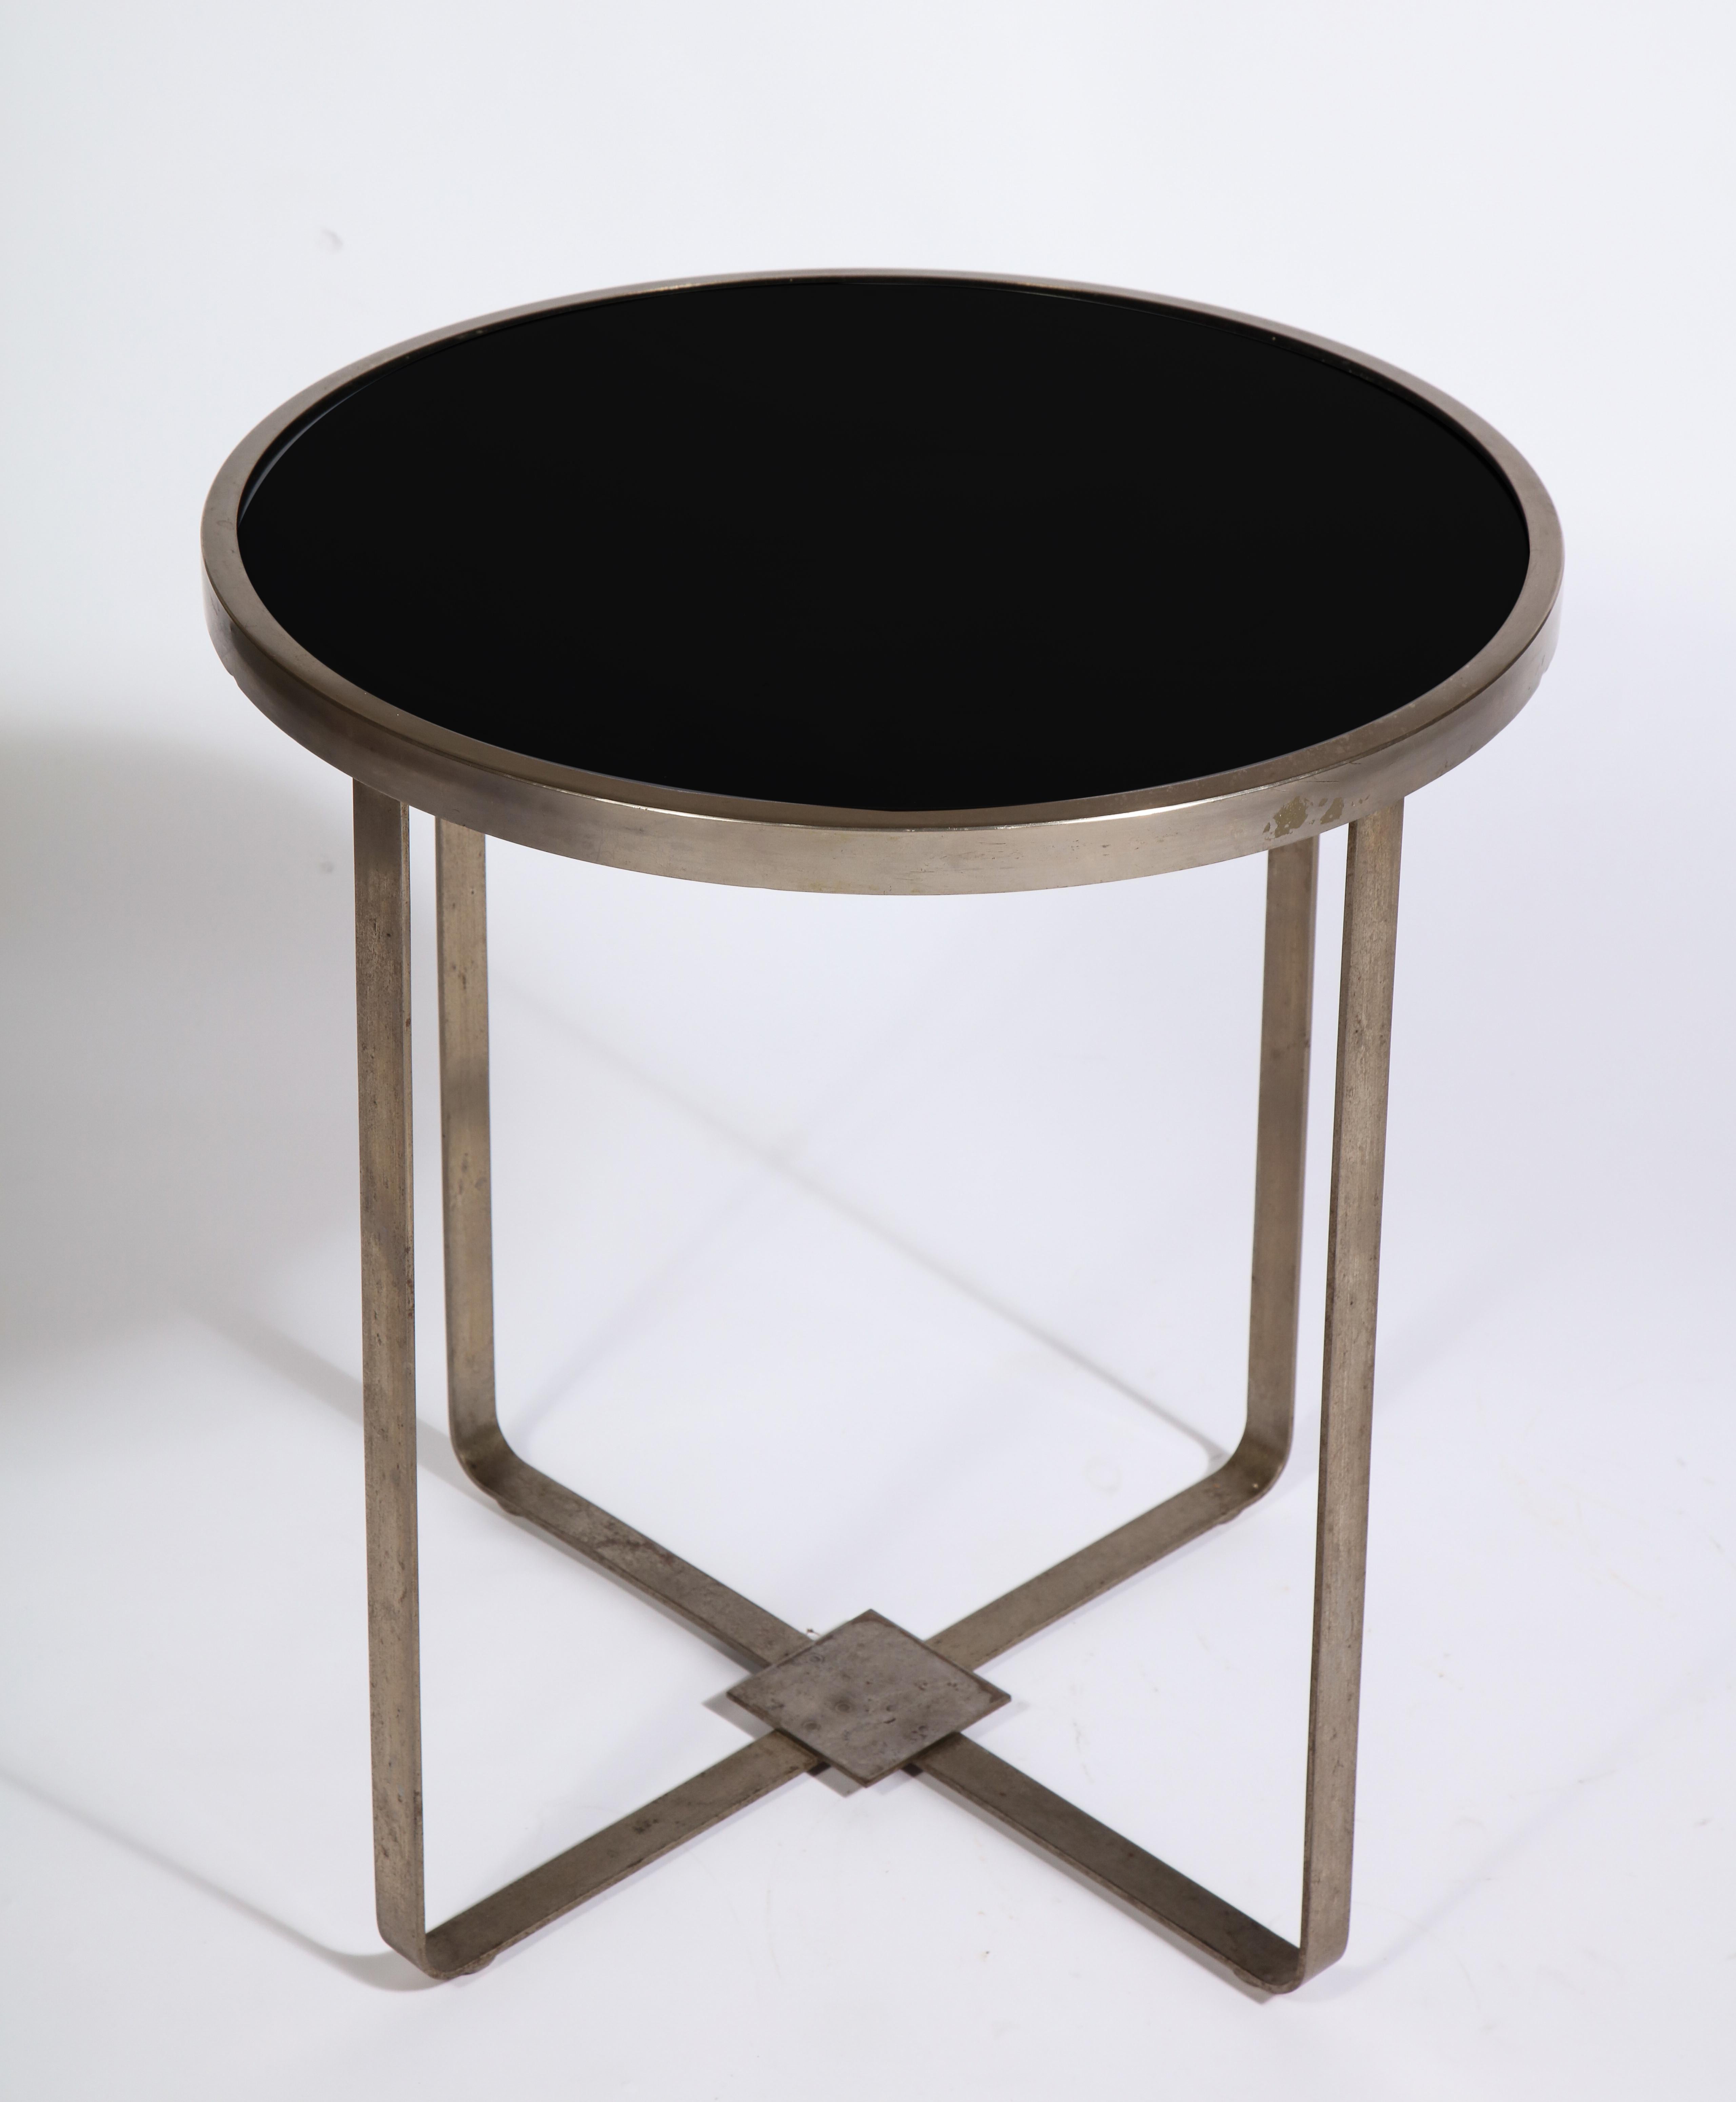 Modernistischer runder Stahltisch aus schwarzem Glas, Frankreich, 1930er Jahre

Gekauft mit Jacques Adnet Chairs und ihm zugeschrieben, aber nicht dokumentiert.
Schöner Stahl mit schwarzem Opalglas. Schick und modern.